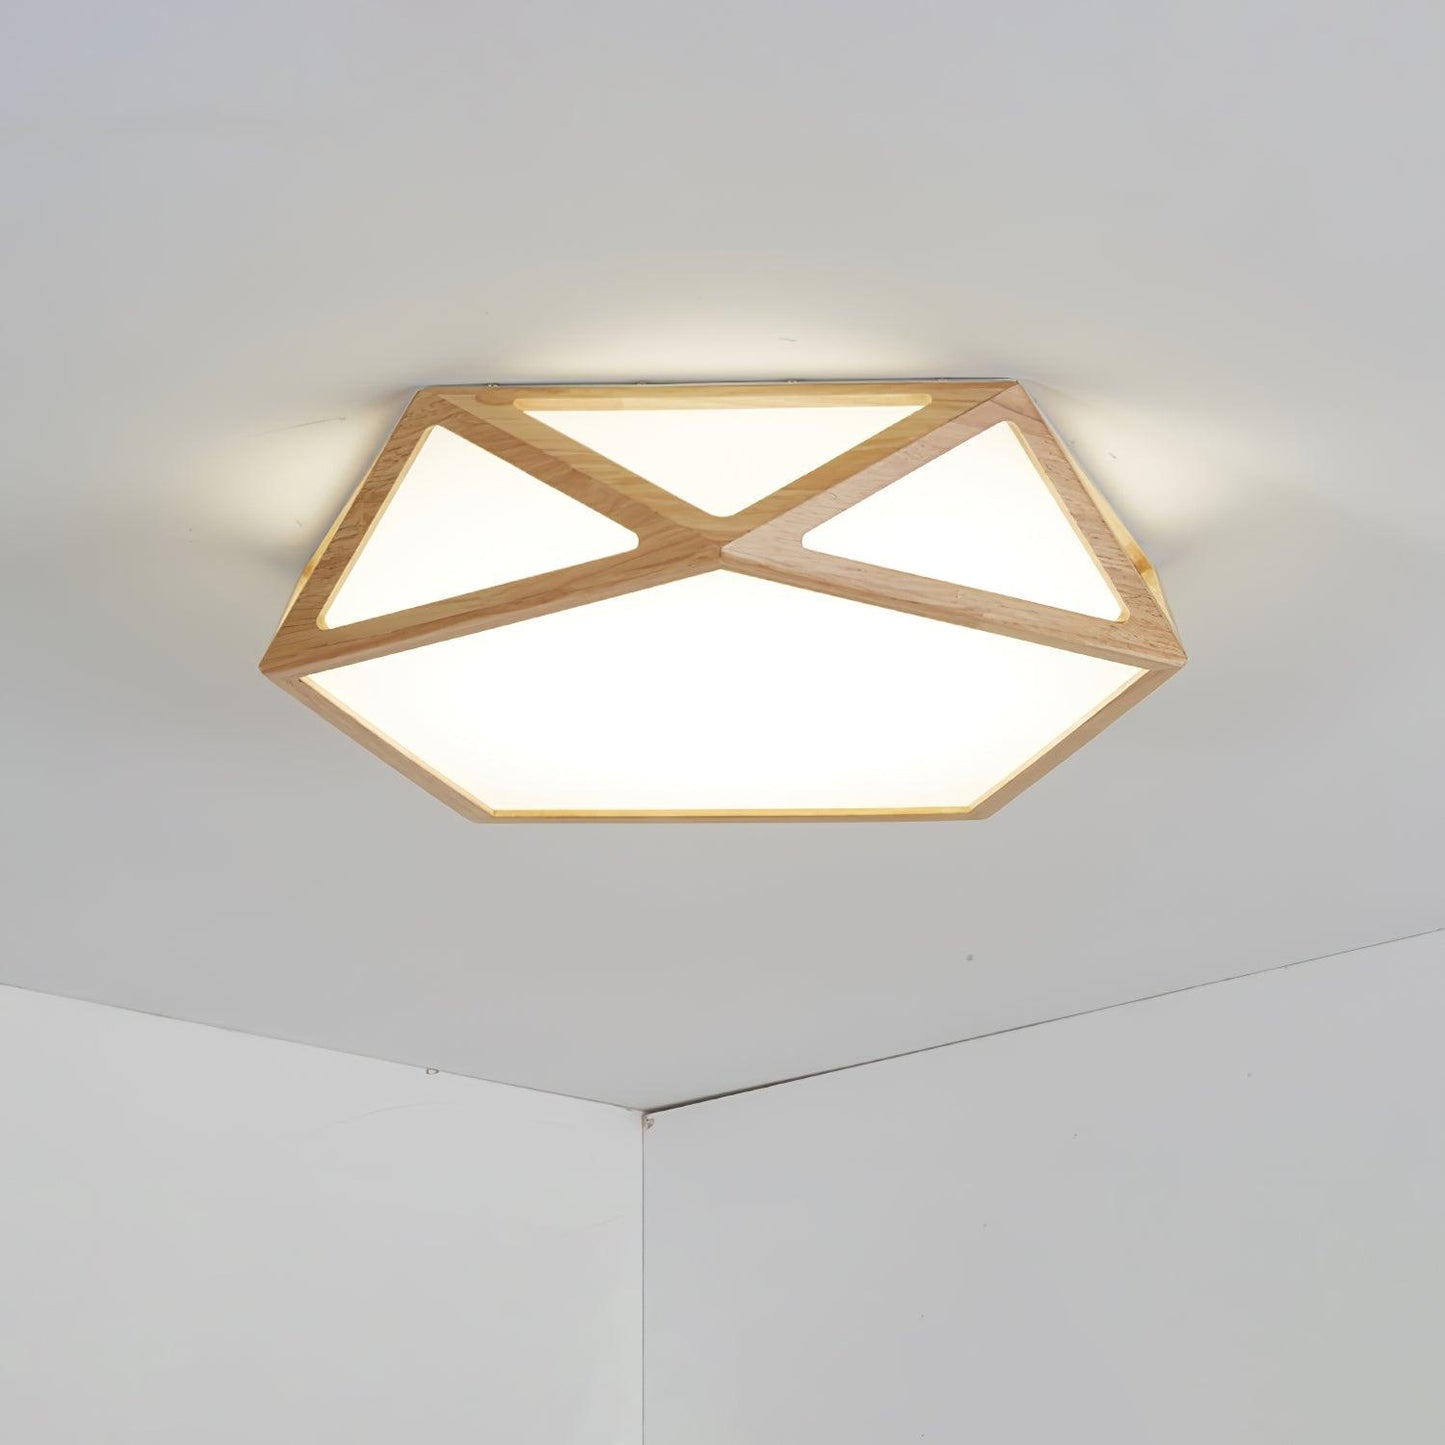 مصباح السقف الخشبي الماسي 